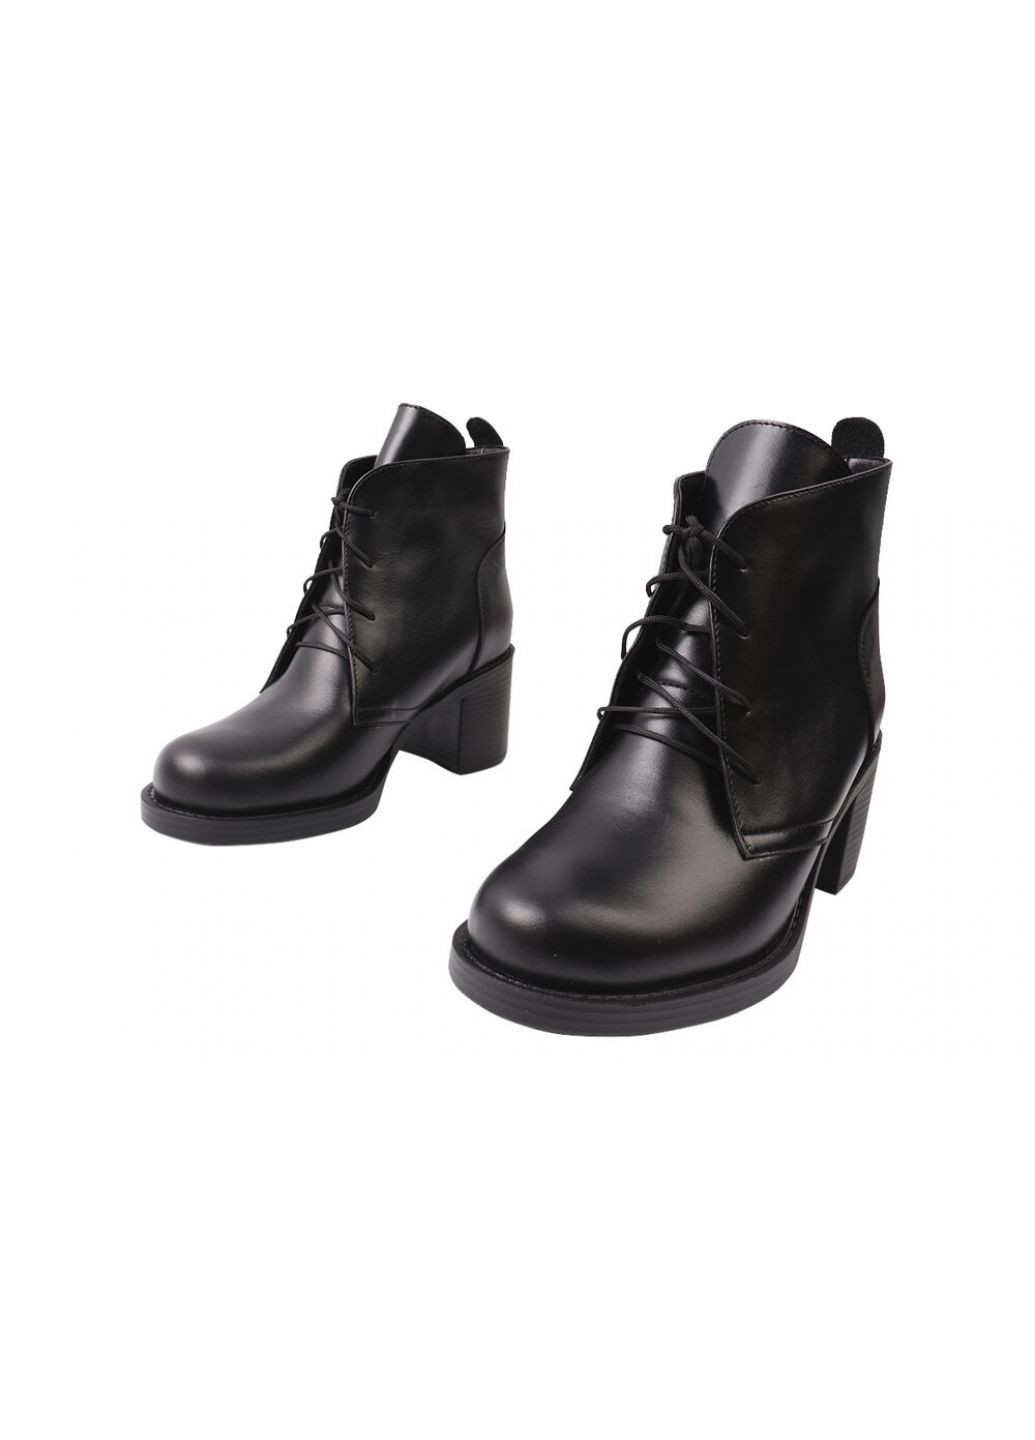 Черные ботинки  женские из натуральной кожи, на низком каблуке, черные, SAVIO 177-9/23ZH